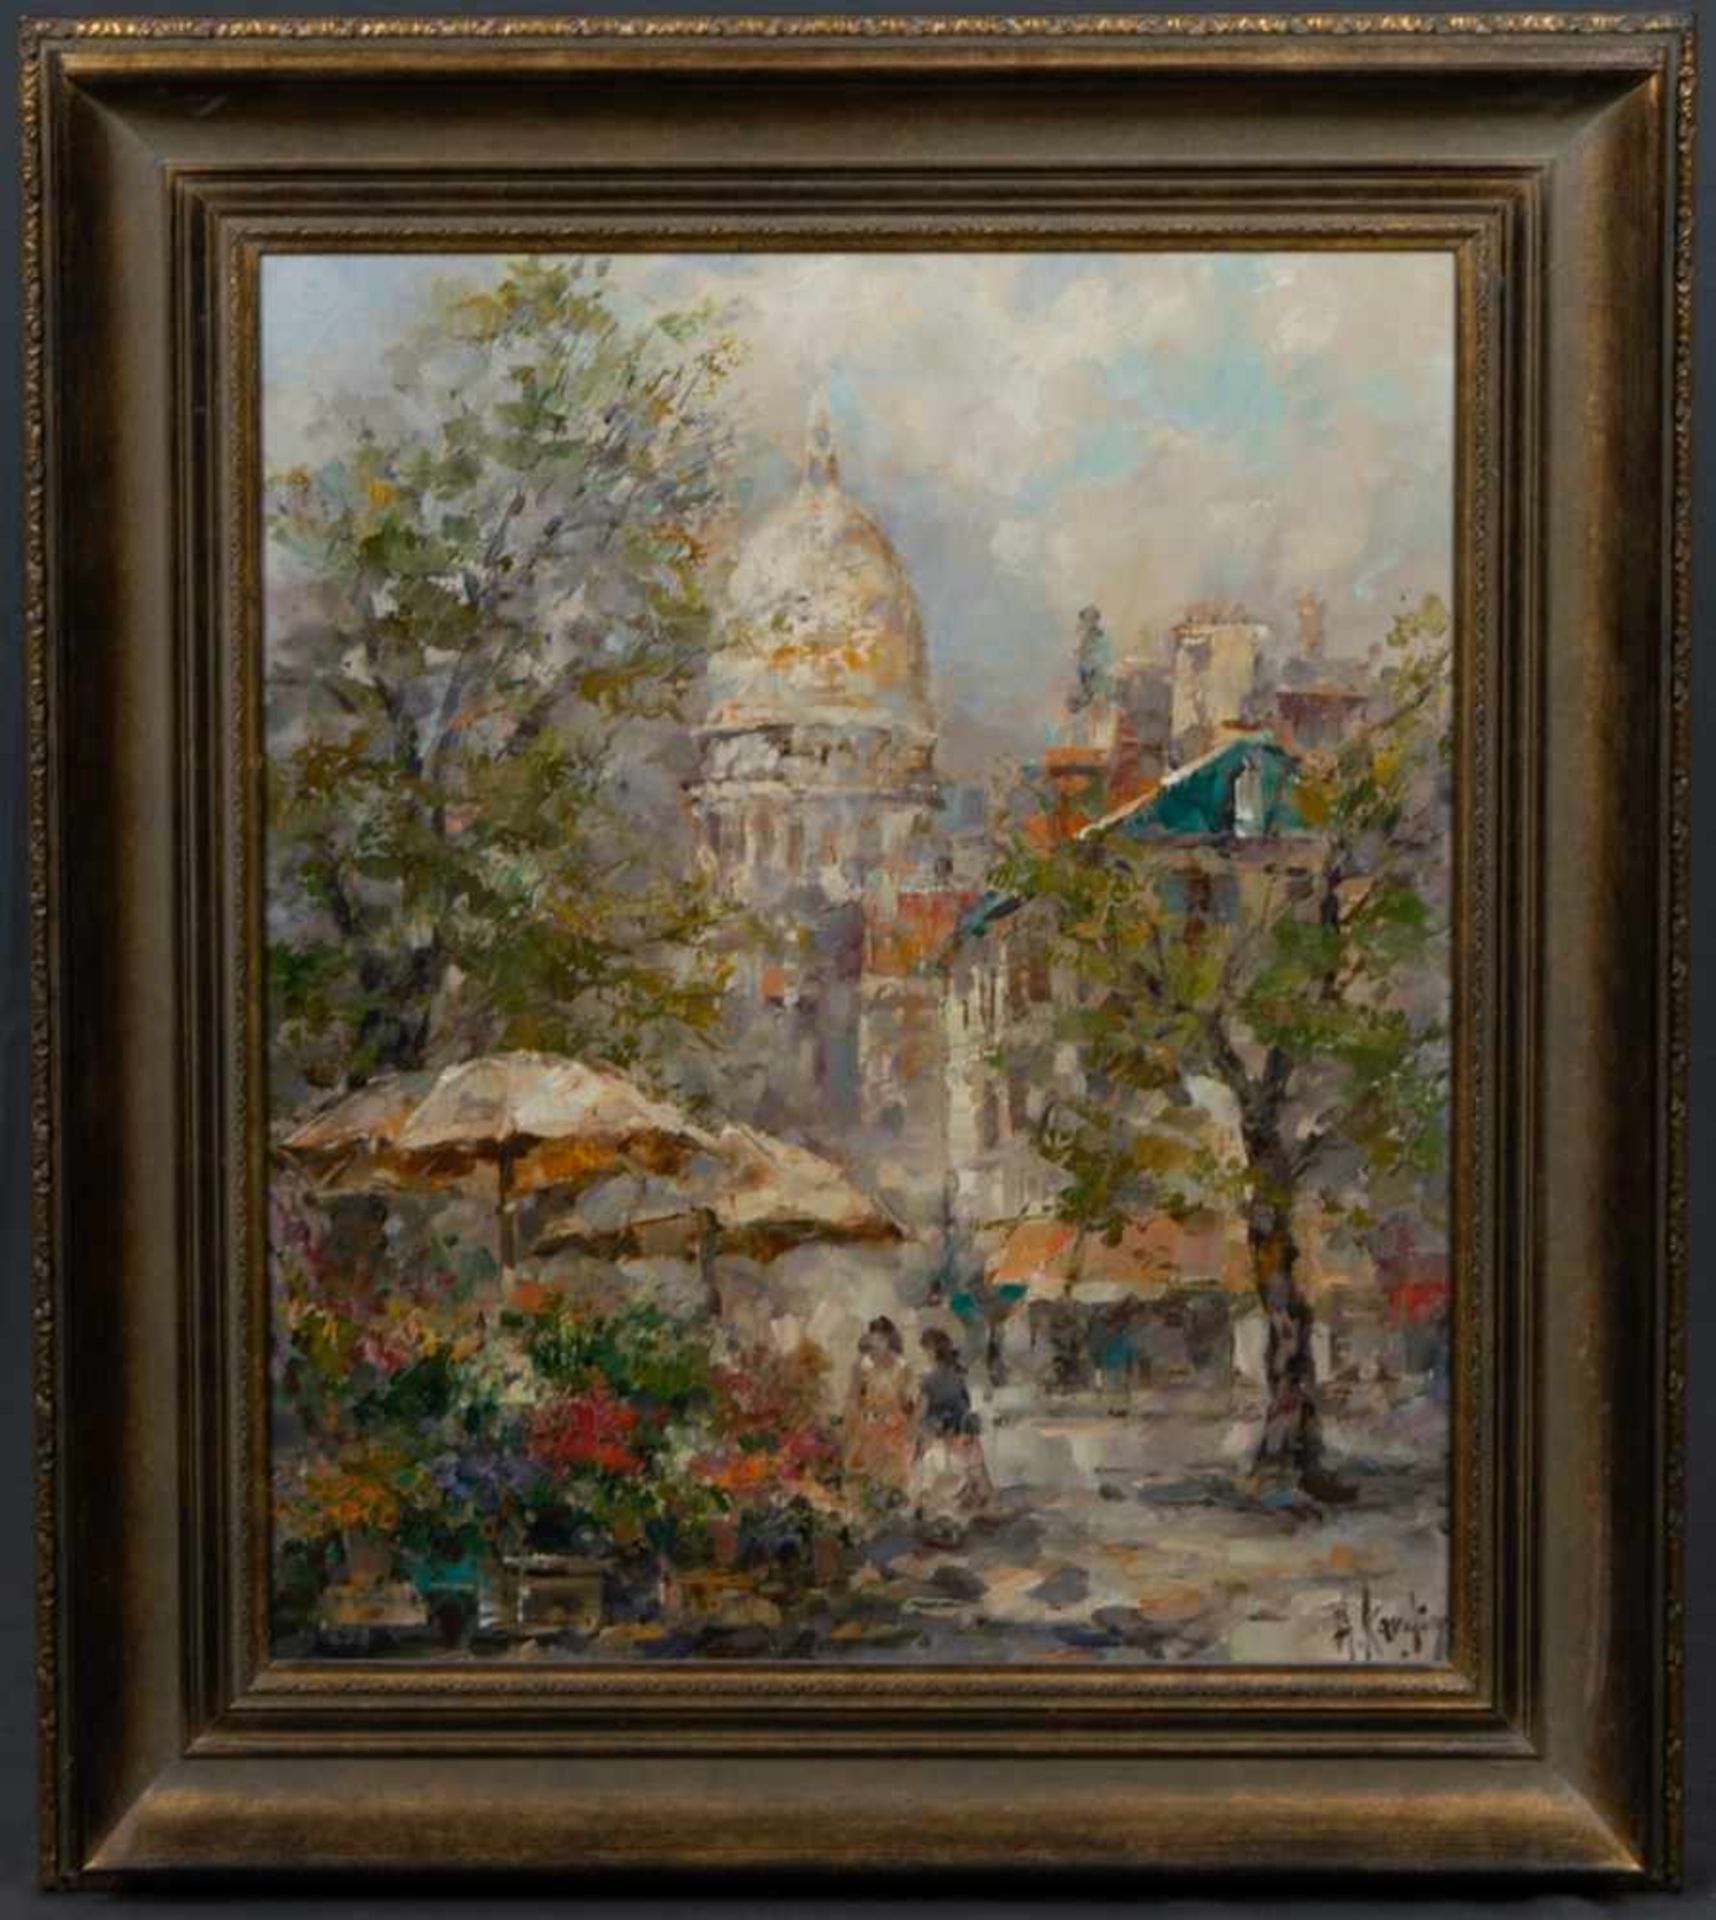 "Blumenmarkt am Dom", Gemälde, Öl auf Leinwand, ca. 60 x 50 cm. Signiert "A. Karding" (o.s.ä.),